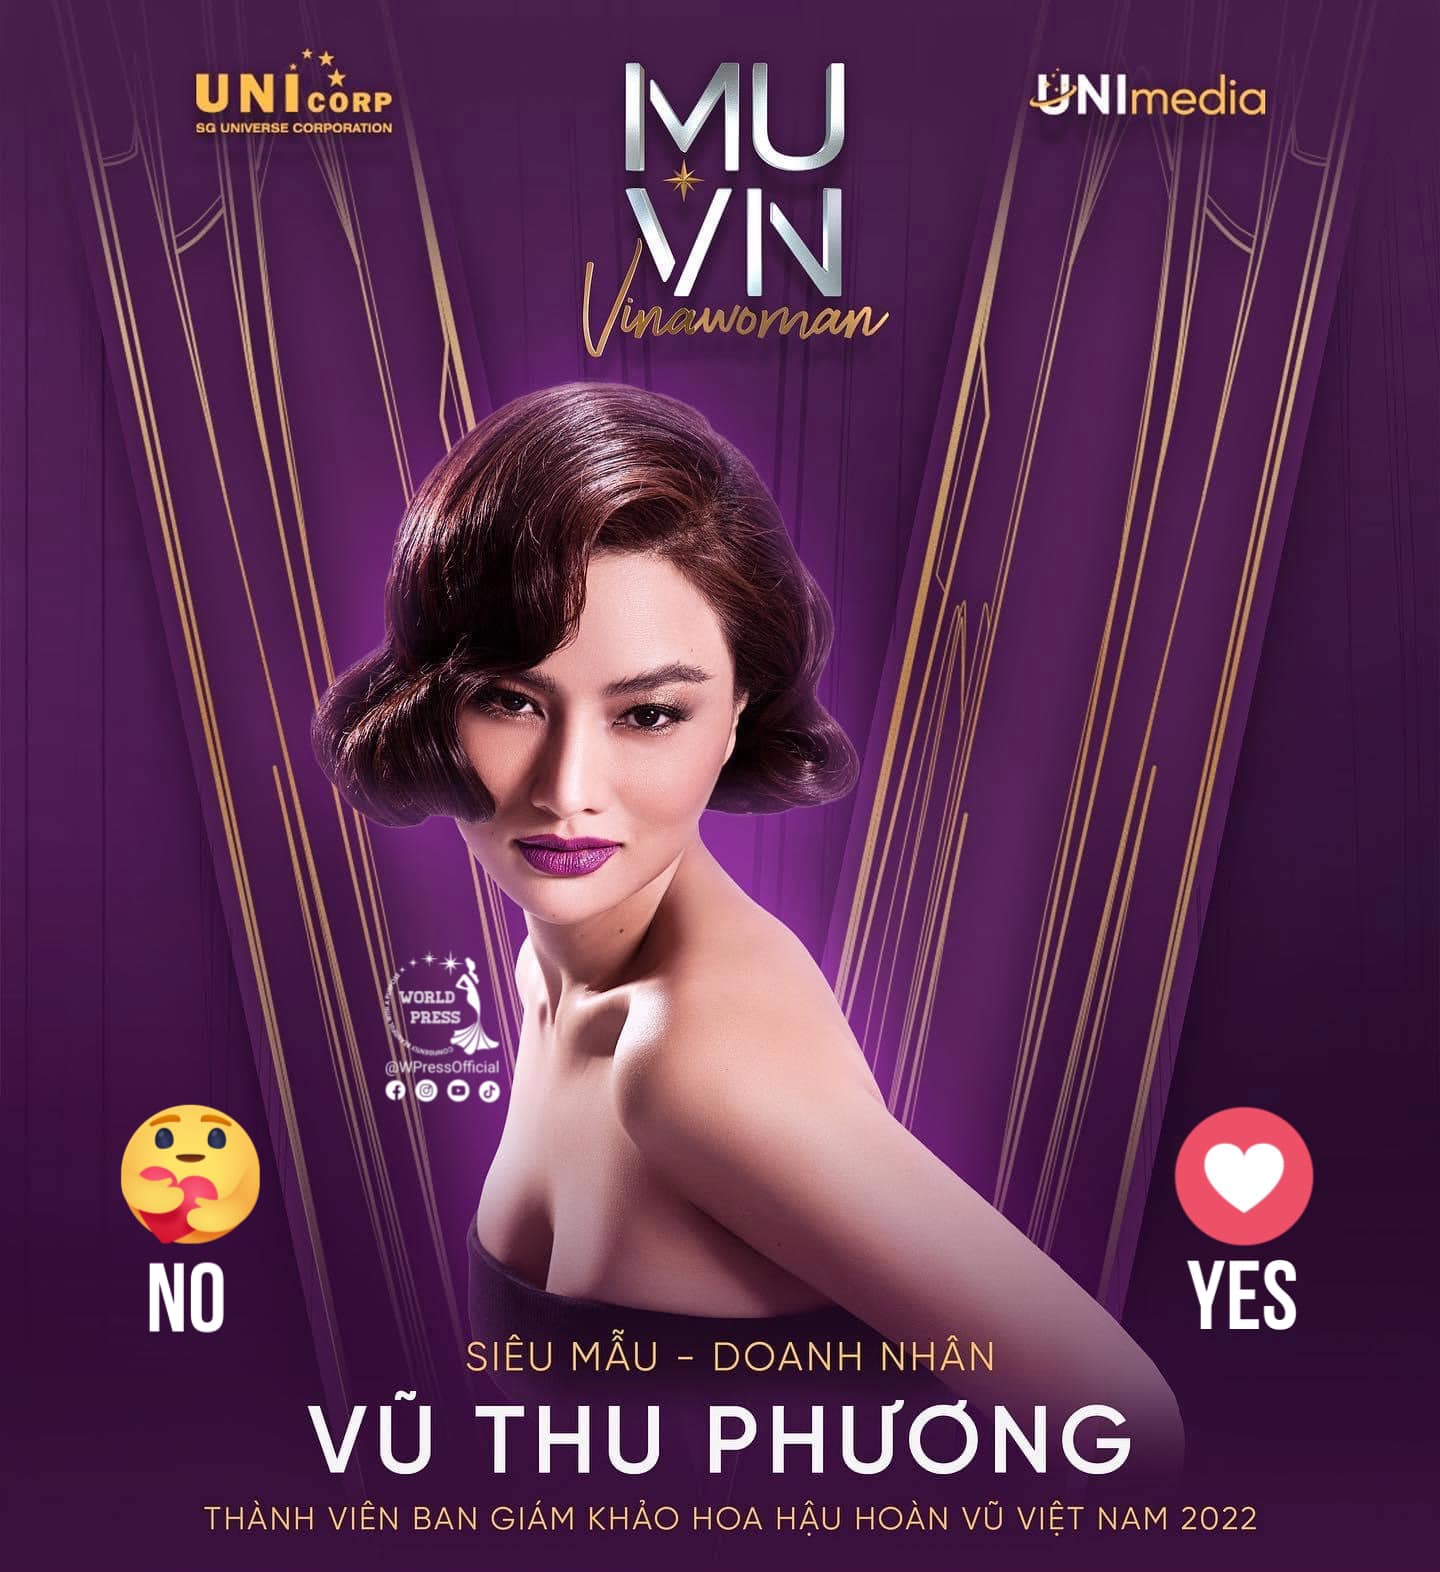 Cựu người mẫu Vũ Thu Phương được thông báo trở thành giám khảo Hoa hậu Hoàn vũ Việt Nam 2022.